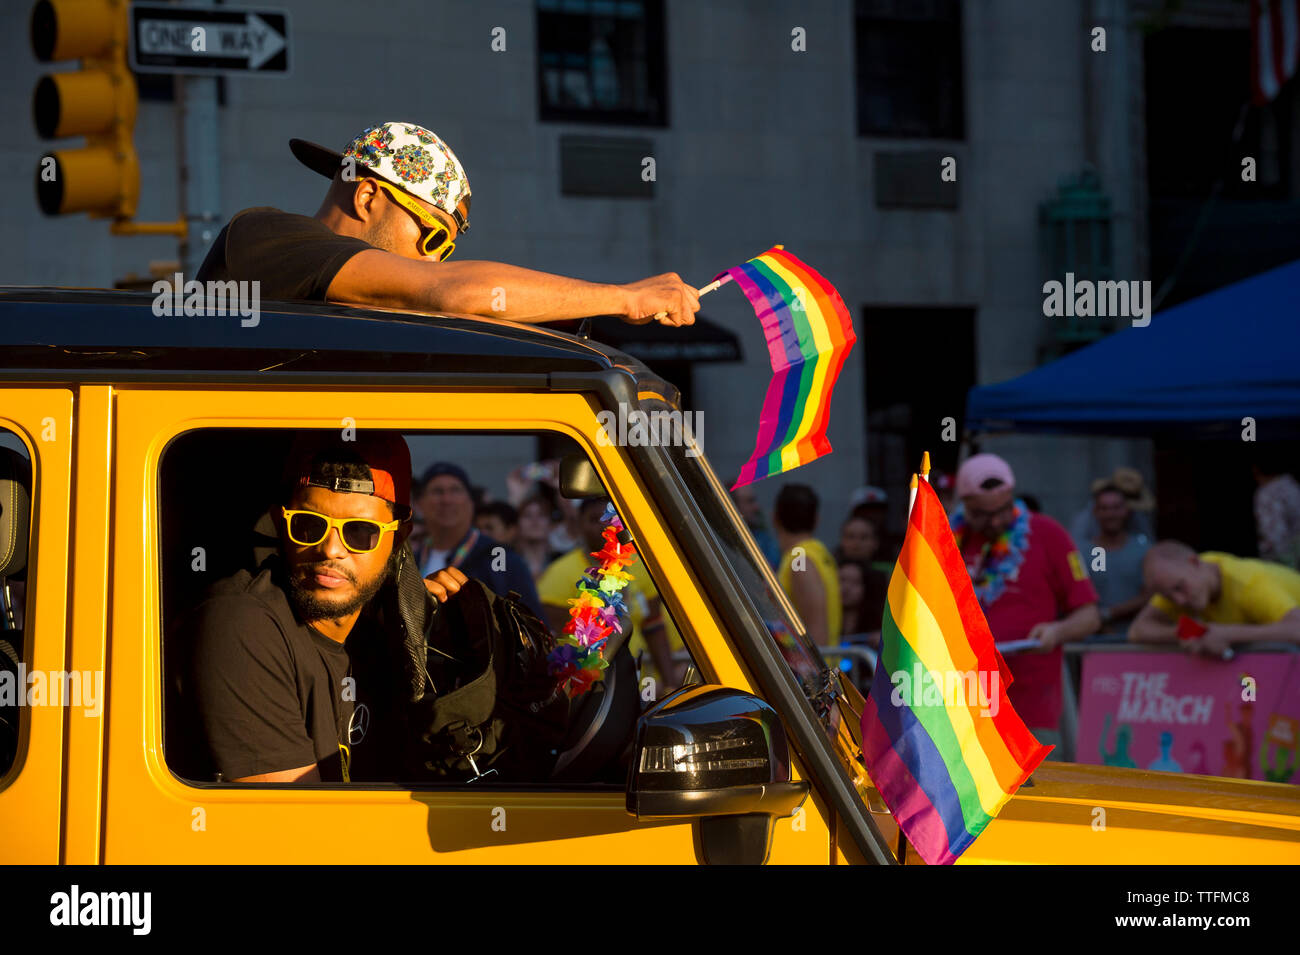 NEW YORK CITY - 25 Juni, 2017: Junge Männer fahren Sie durch die jährliche Gay Pride Parade mit regenbogenfahnen, wie sie durch Greenwich Village. Stockfoto